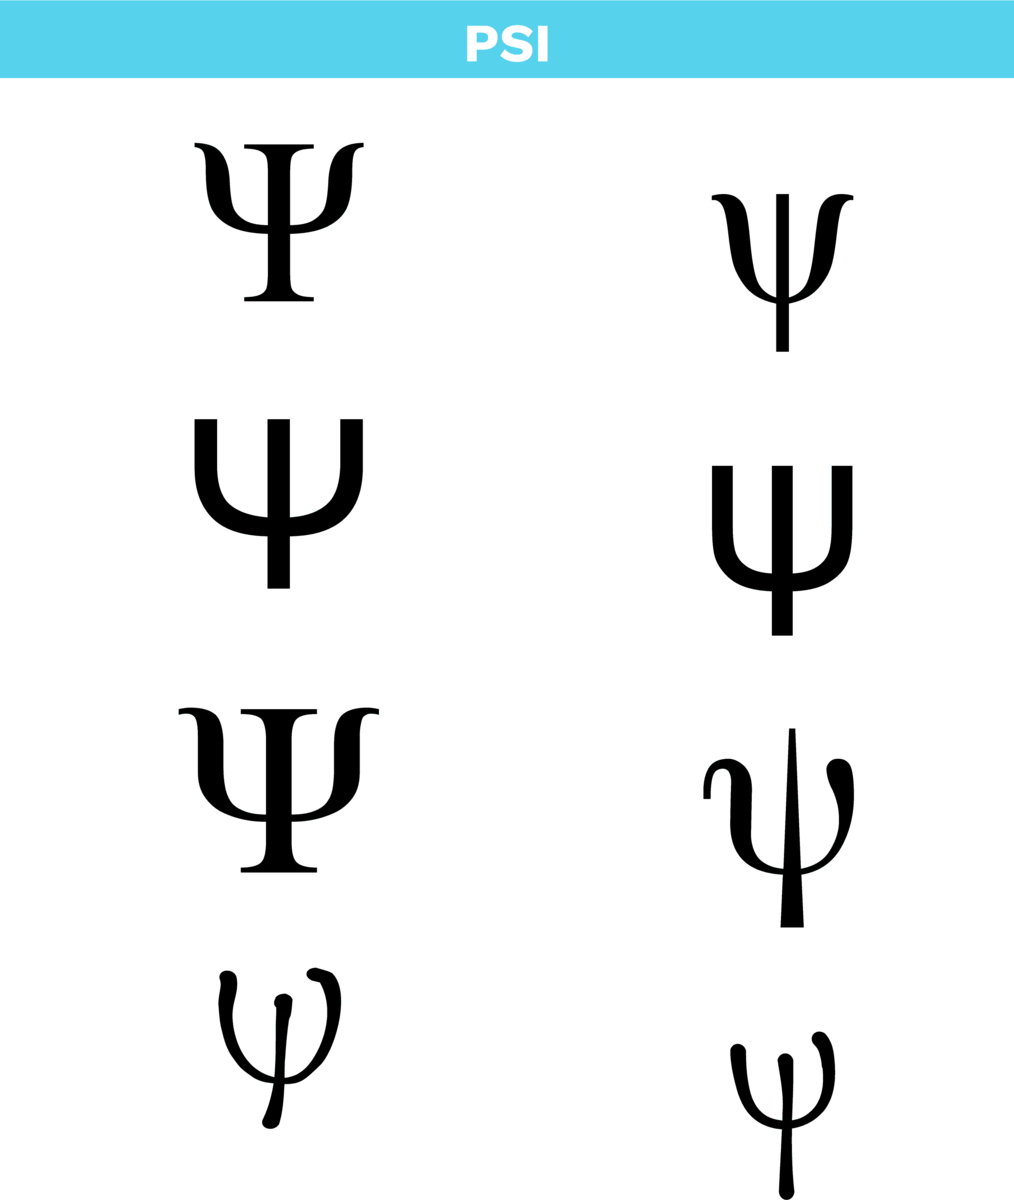 Bokstaven psi i det greske alfabetet i ulike skrifttyper